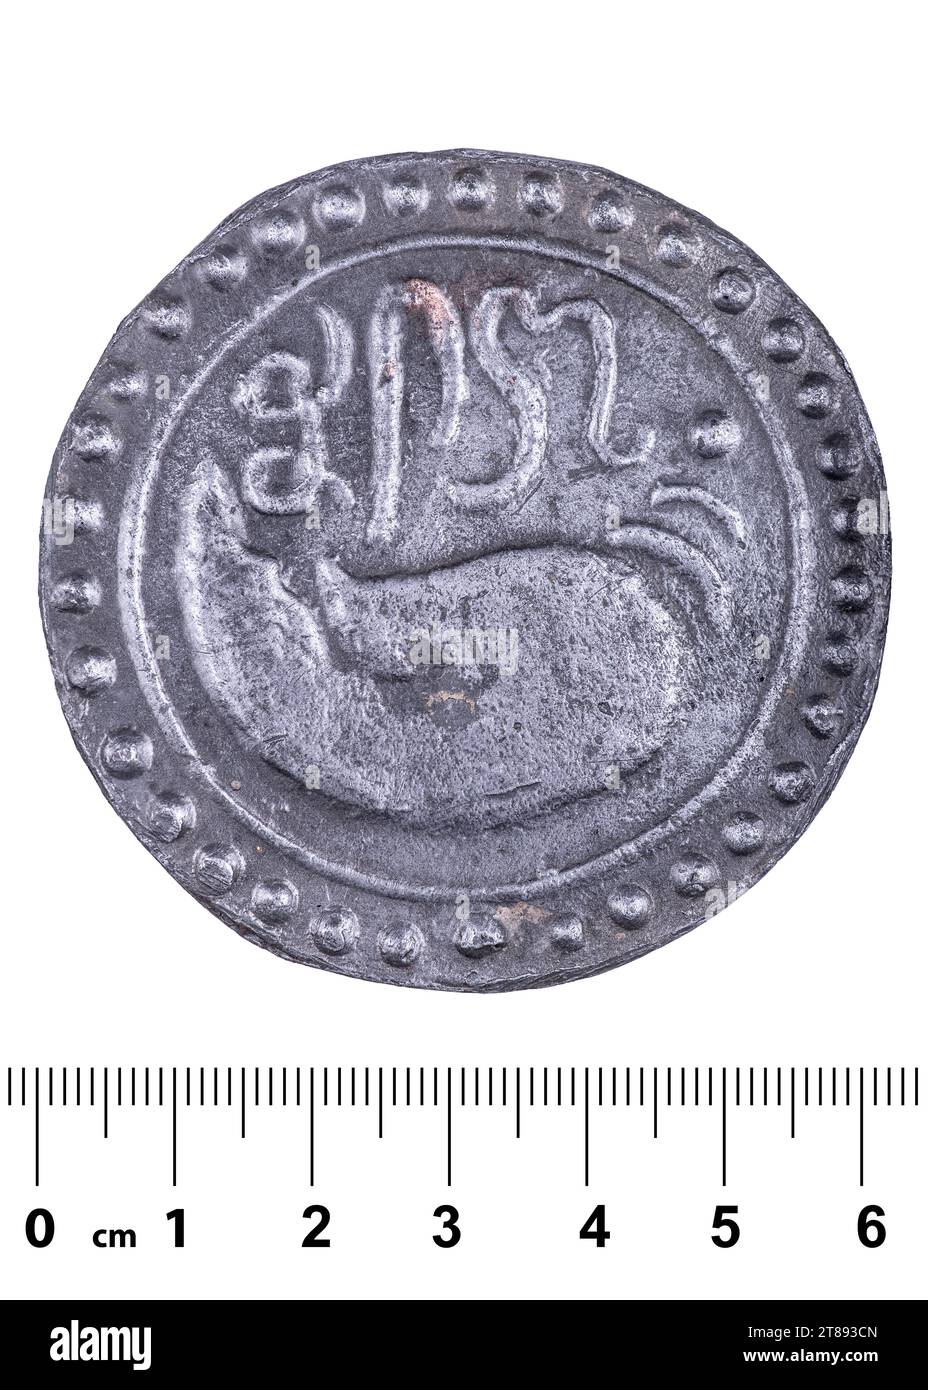 Un'antica moneta del regno di Funan con un'immagine di una conchiglia e un'iscrizione in un'antica lingua dimenticata. Dritto. Isolato su bianco Foto Stock